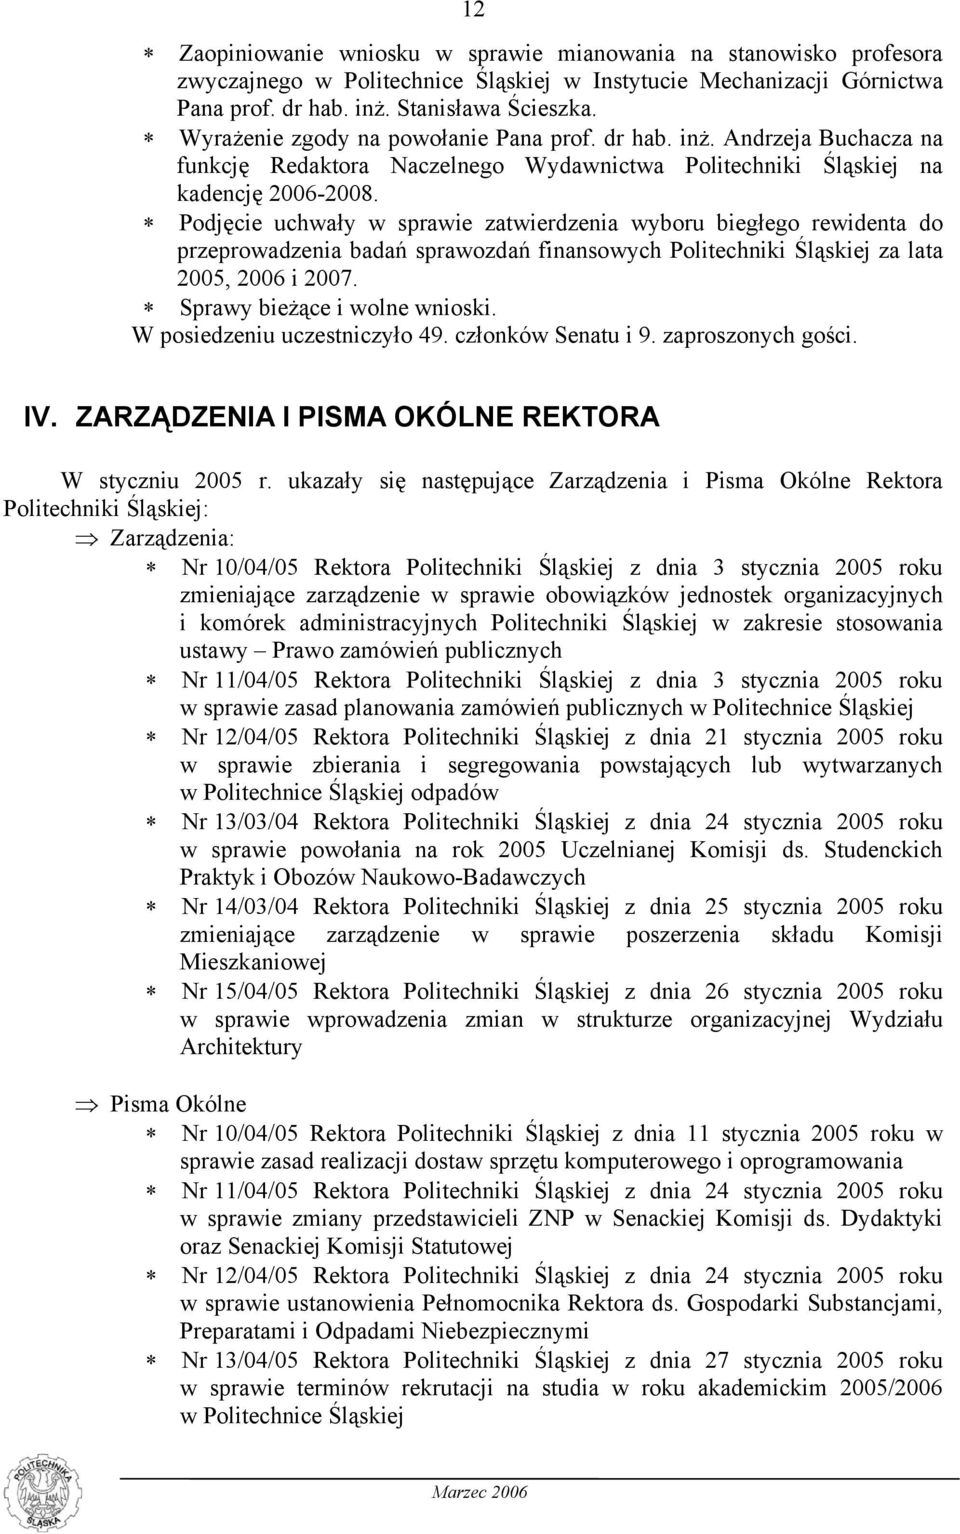 Podjęcie uchwały w sprawie zatwierdzenia wyboru biegłego rewidenta do przeprowadzenia badań sprawozdań finansowych Politechniki Śląskiej za lata 2005, 2006 i 2007. Sprawy bieżące i wolne wnioski.